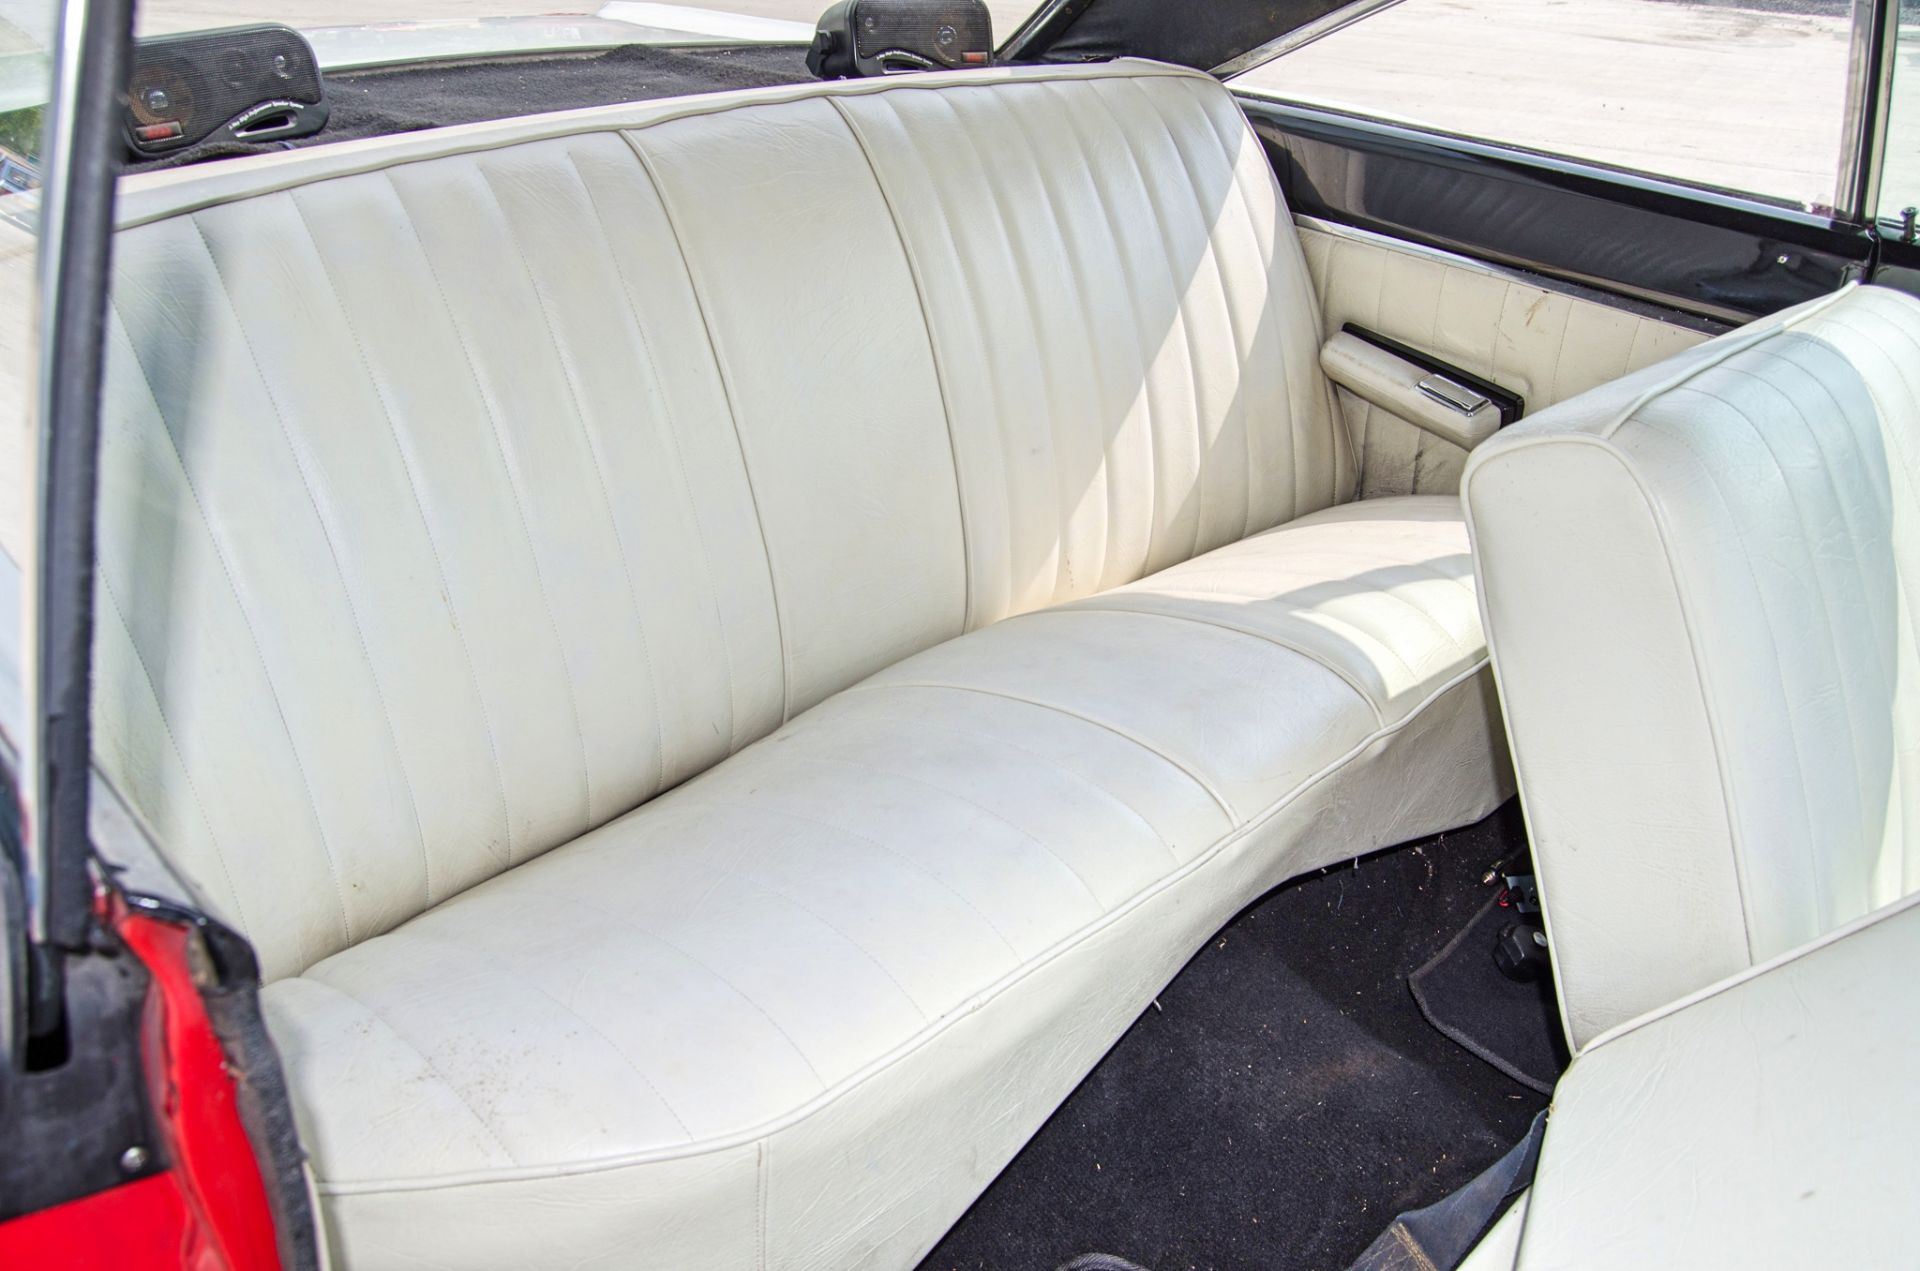 1967 Dodge Coronet 440 7.2 litre 2 door coupe - Image 40 of 54